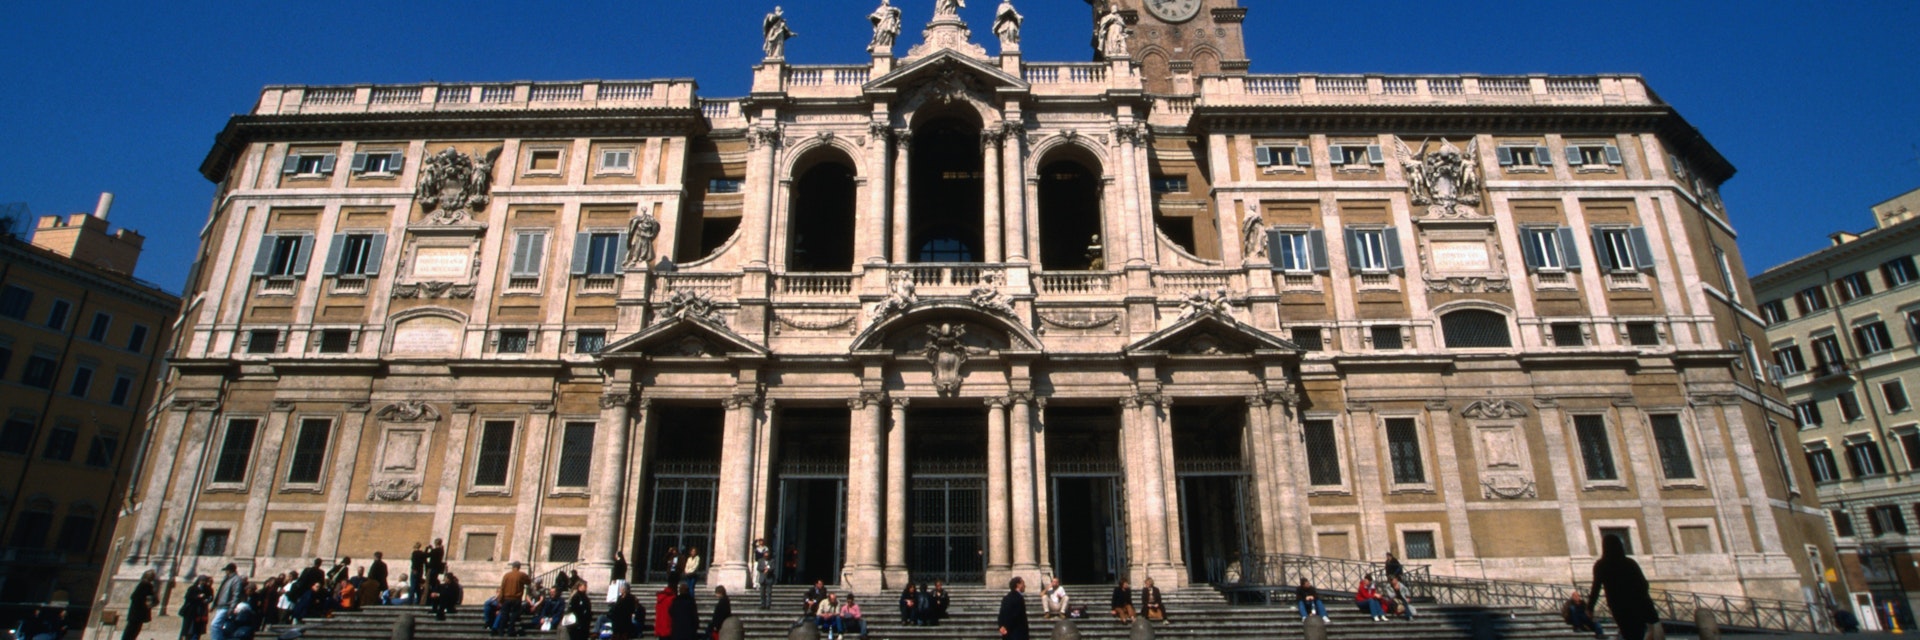 Facade of Basilica di Santa Maria Maggiore.